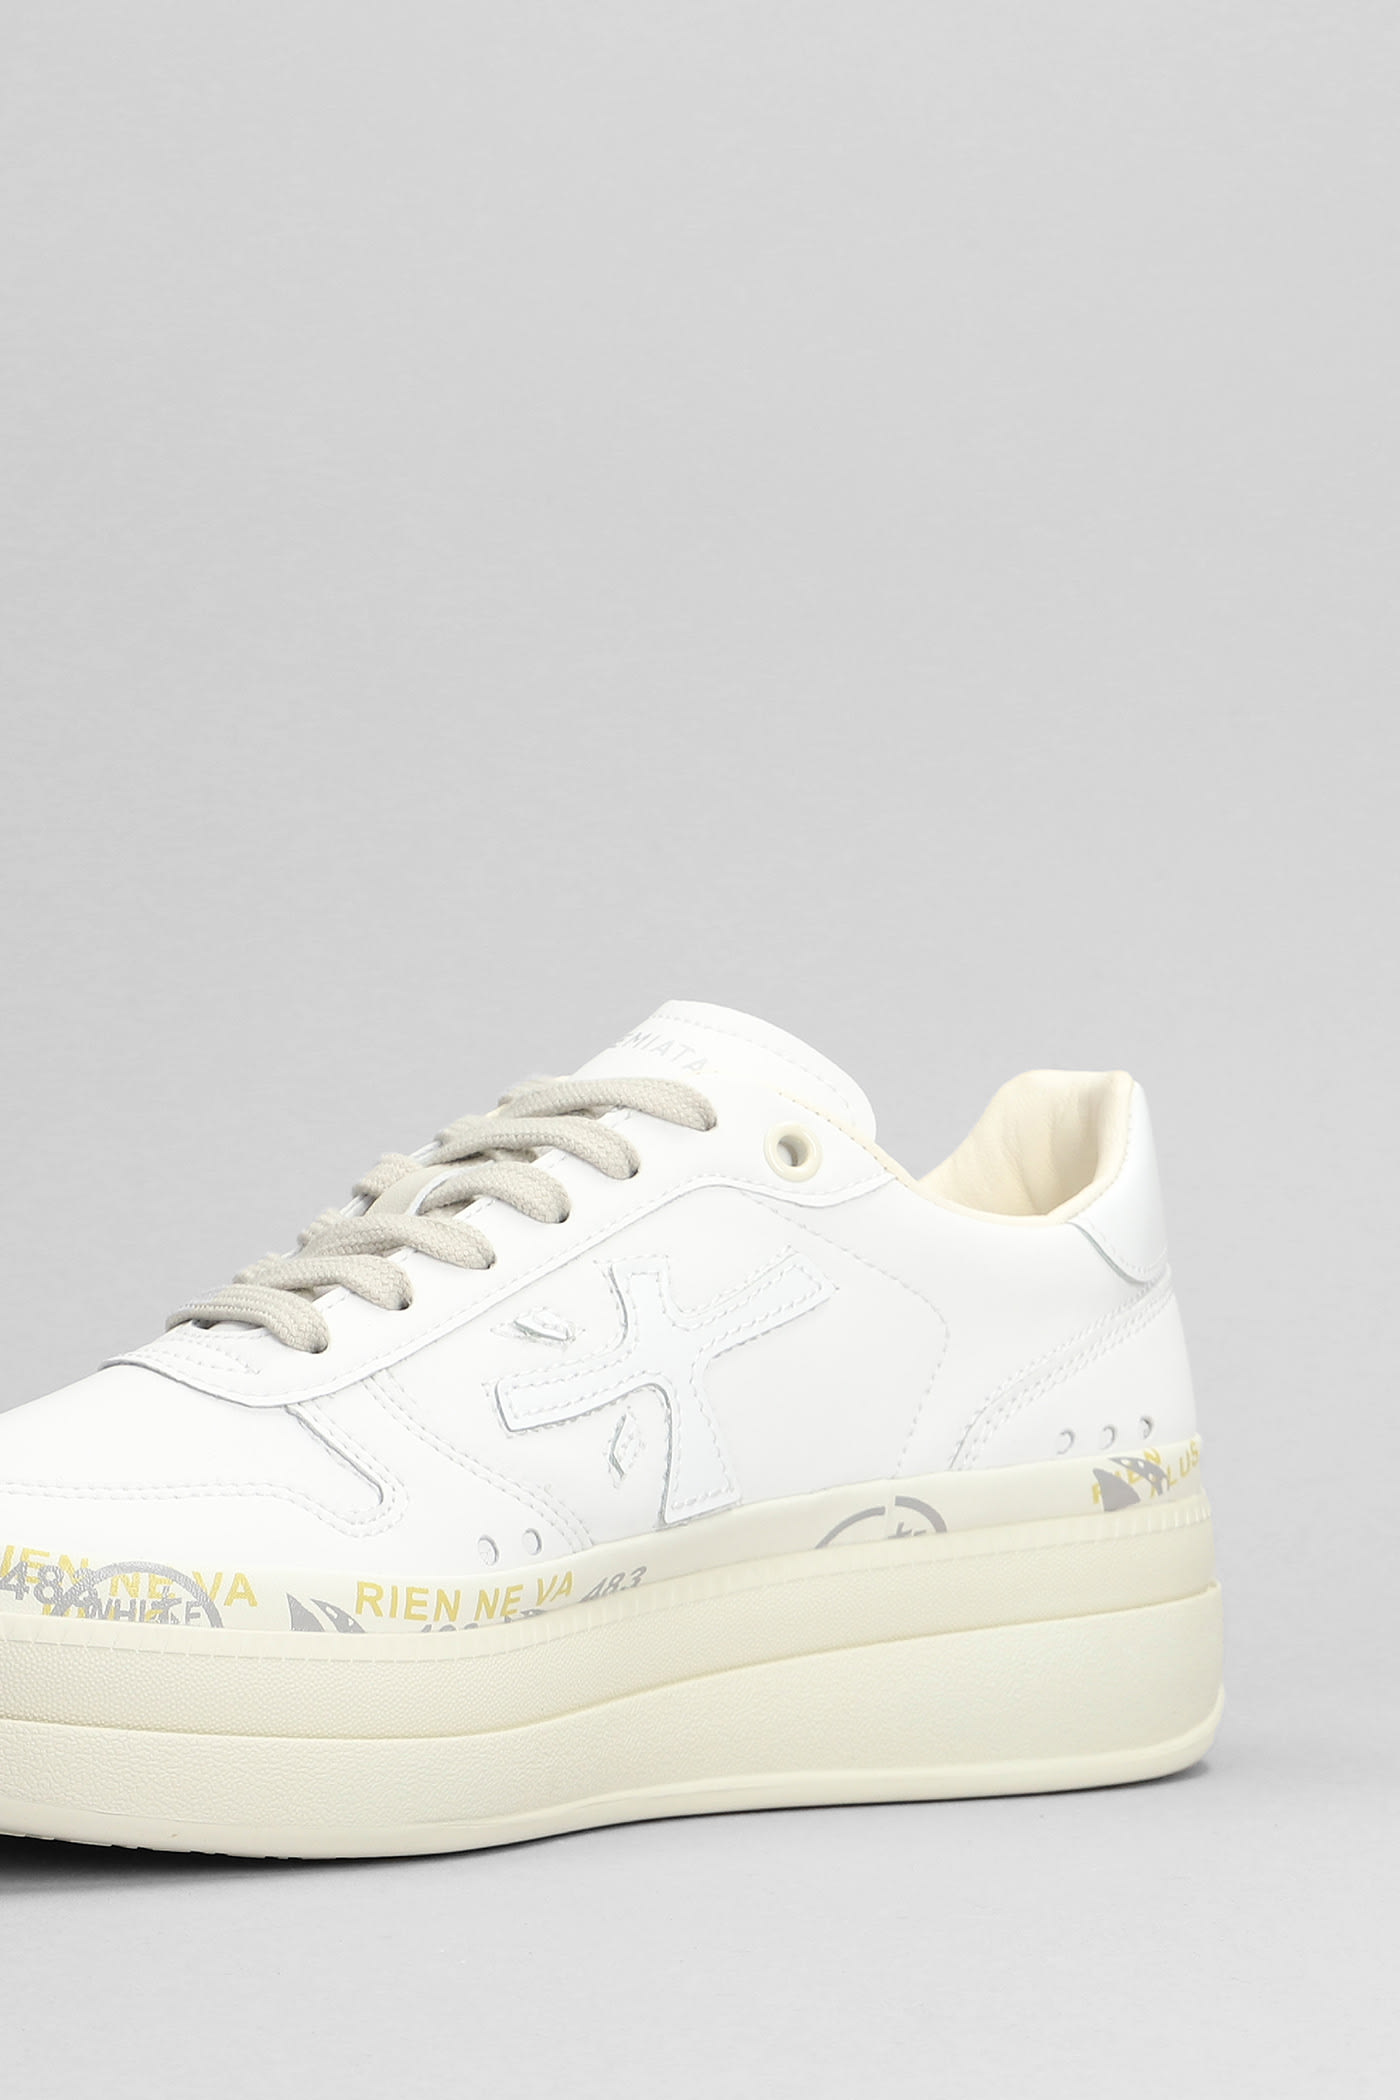 Shop Premiata Micol Sneakers In White Leather